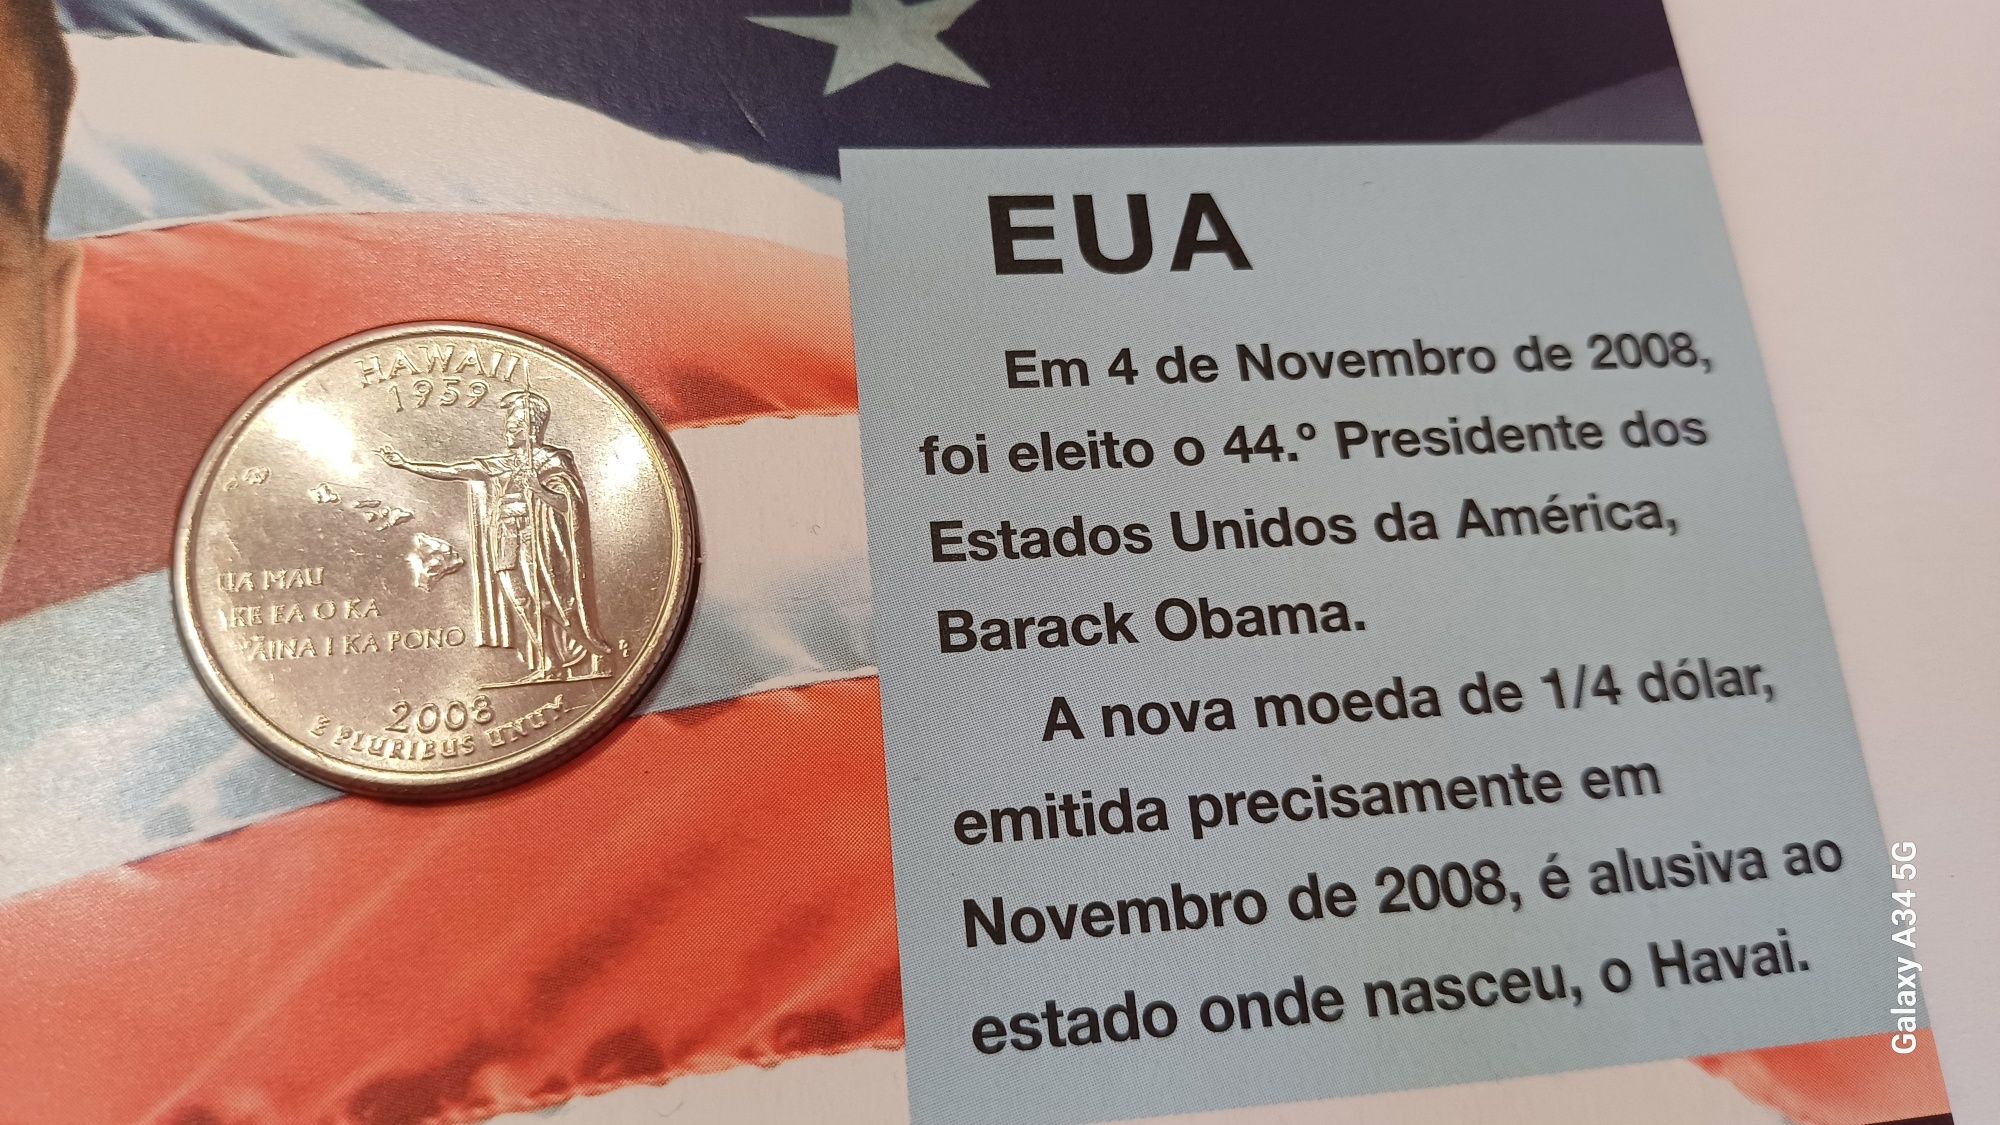 USA--1/4 dólar Havai 2008 UNC Philae nov 2008 Estados Unidos da Améric